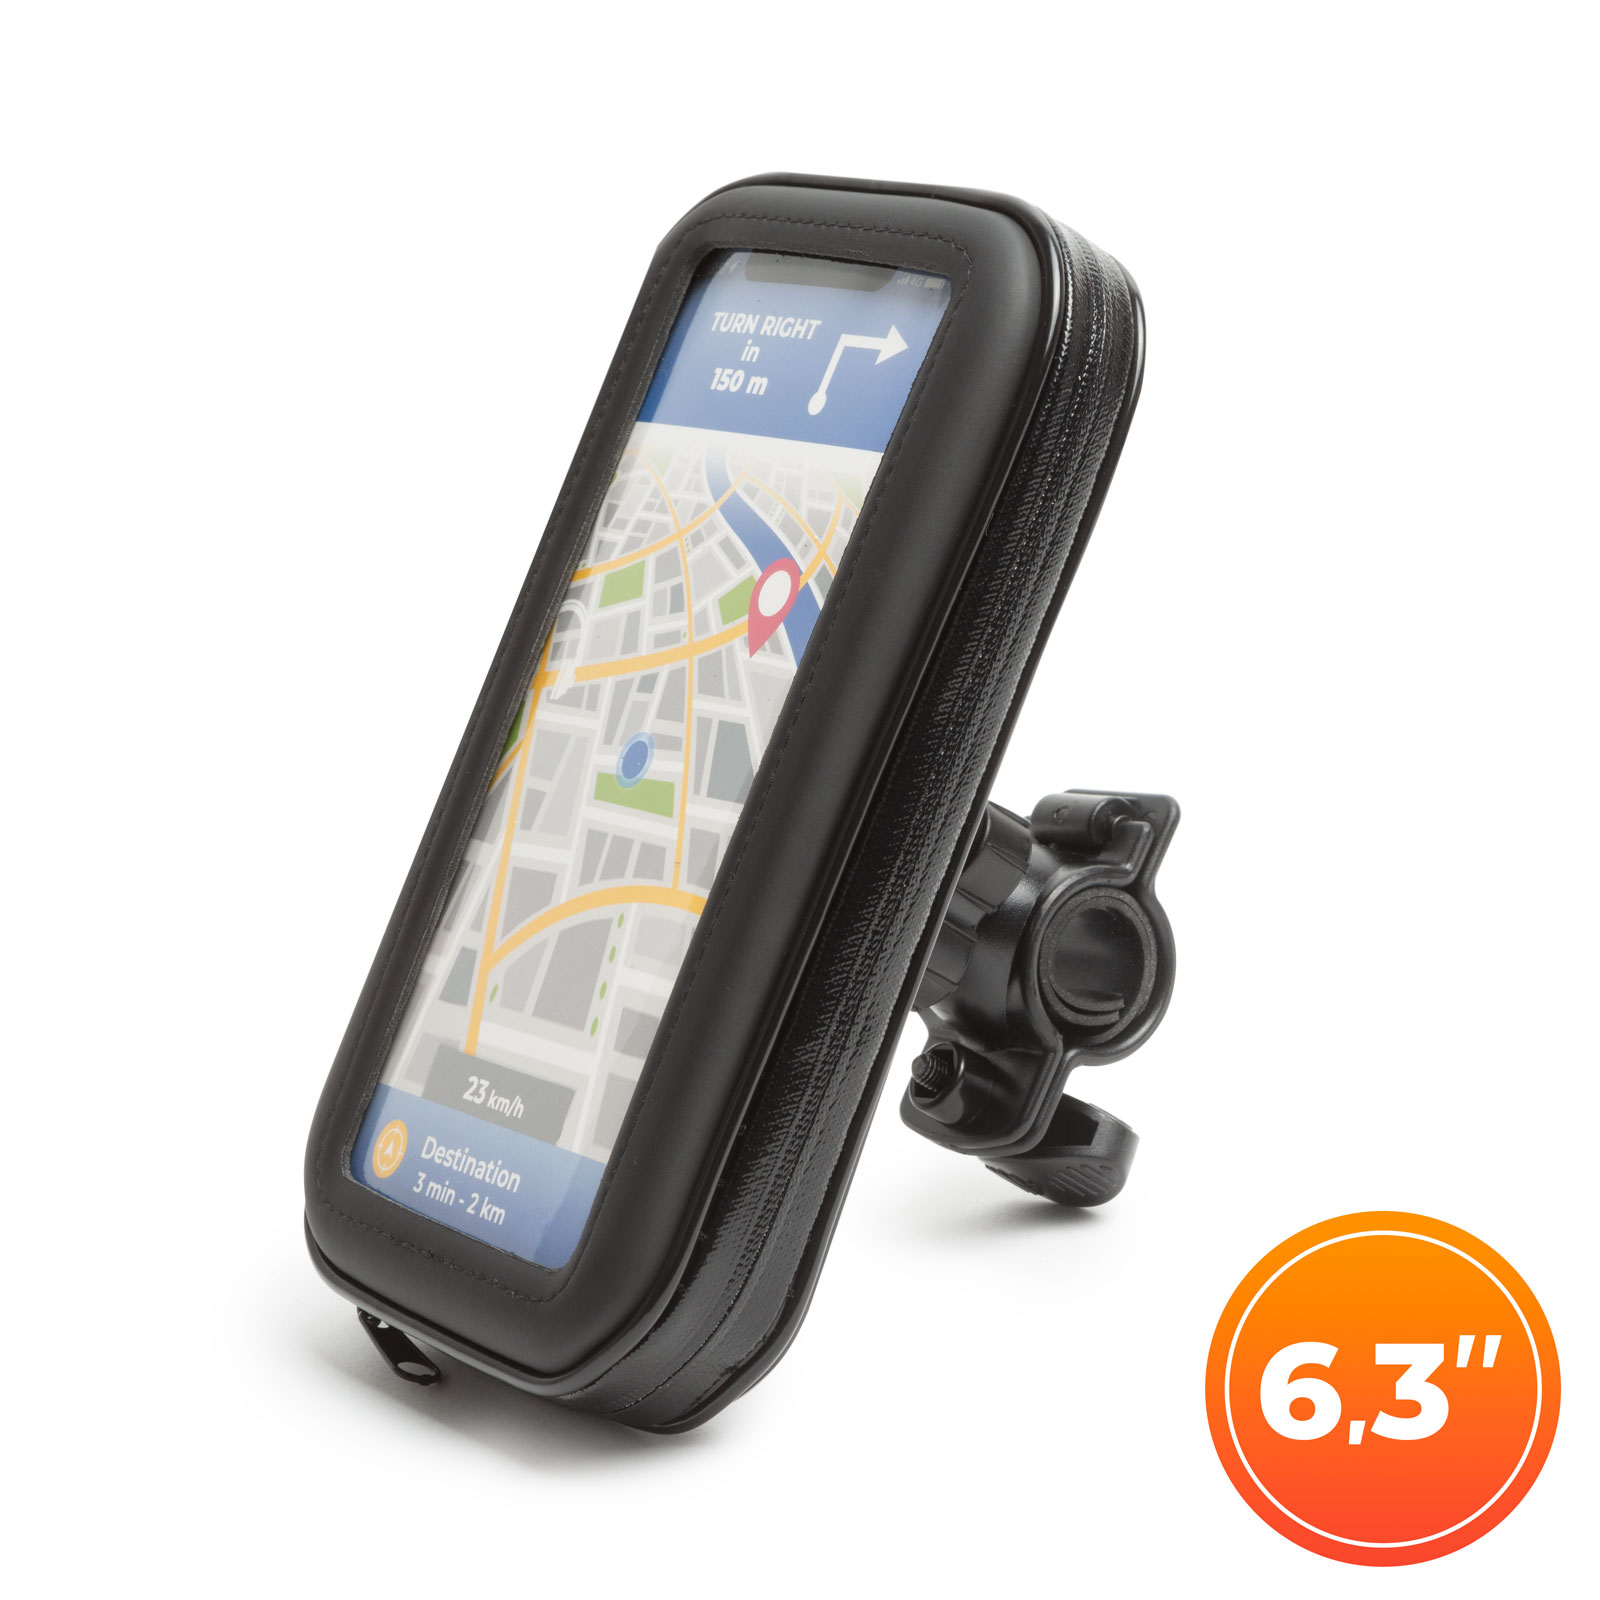 Husa pentru telefon montaj pe biciclete cu suprafata tactila max. 6.3